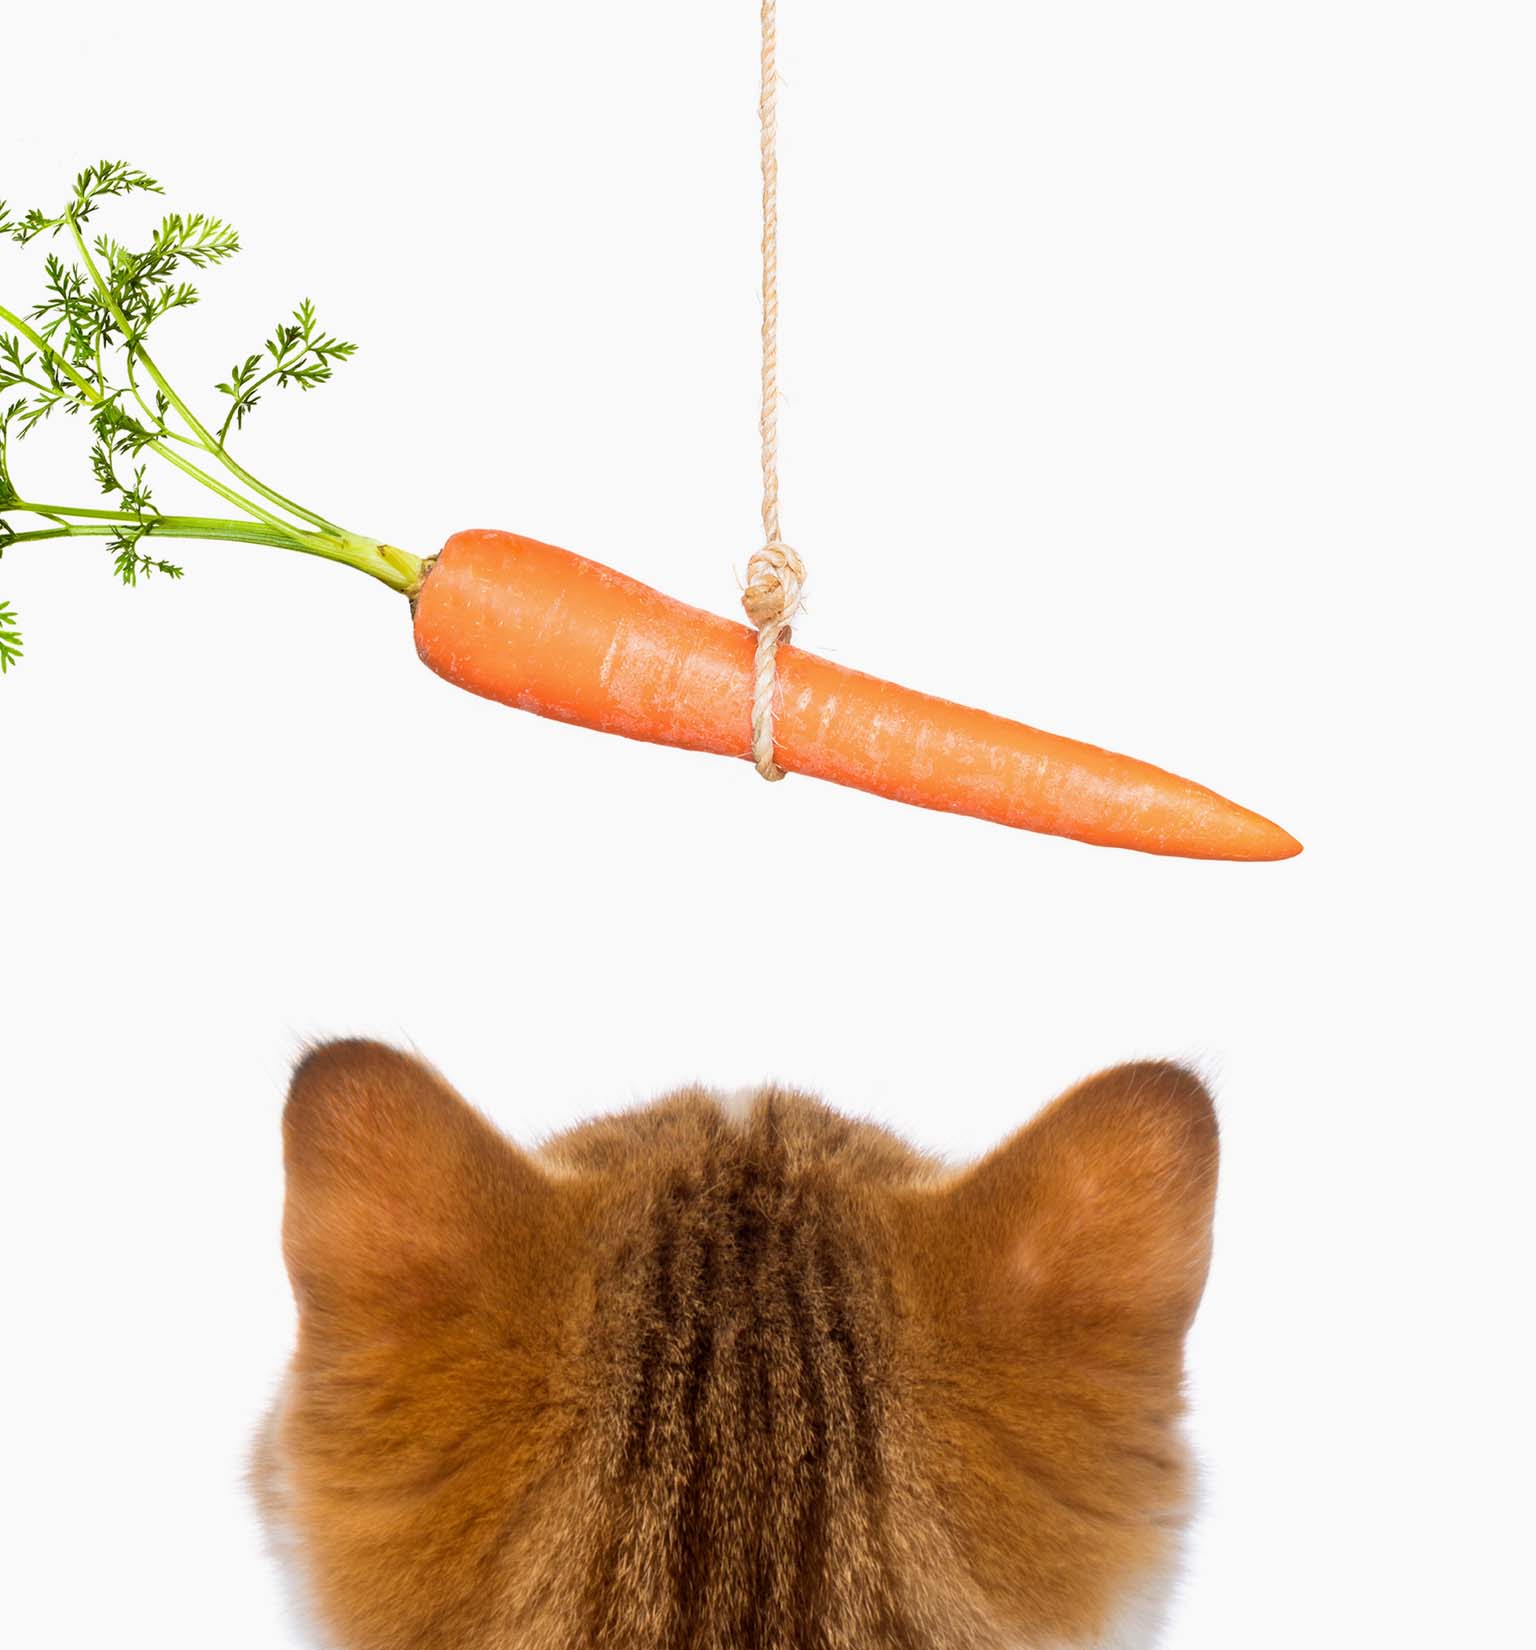 Sind Karotten gut für meine Katze?